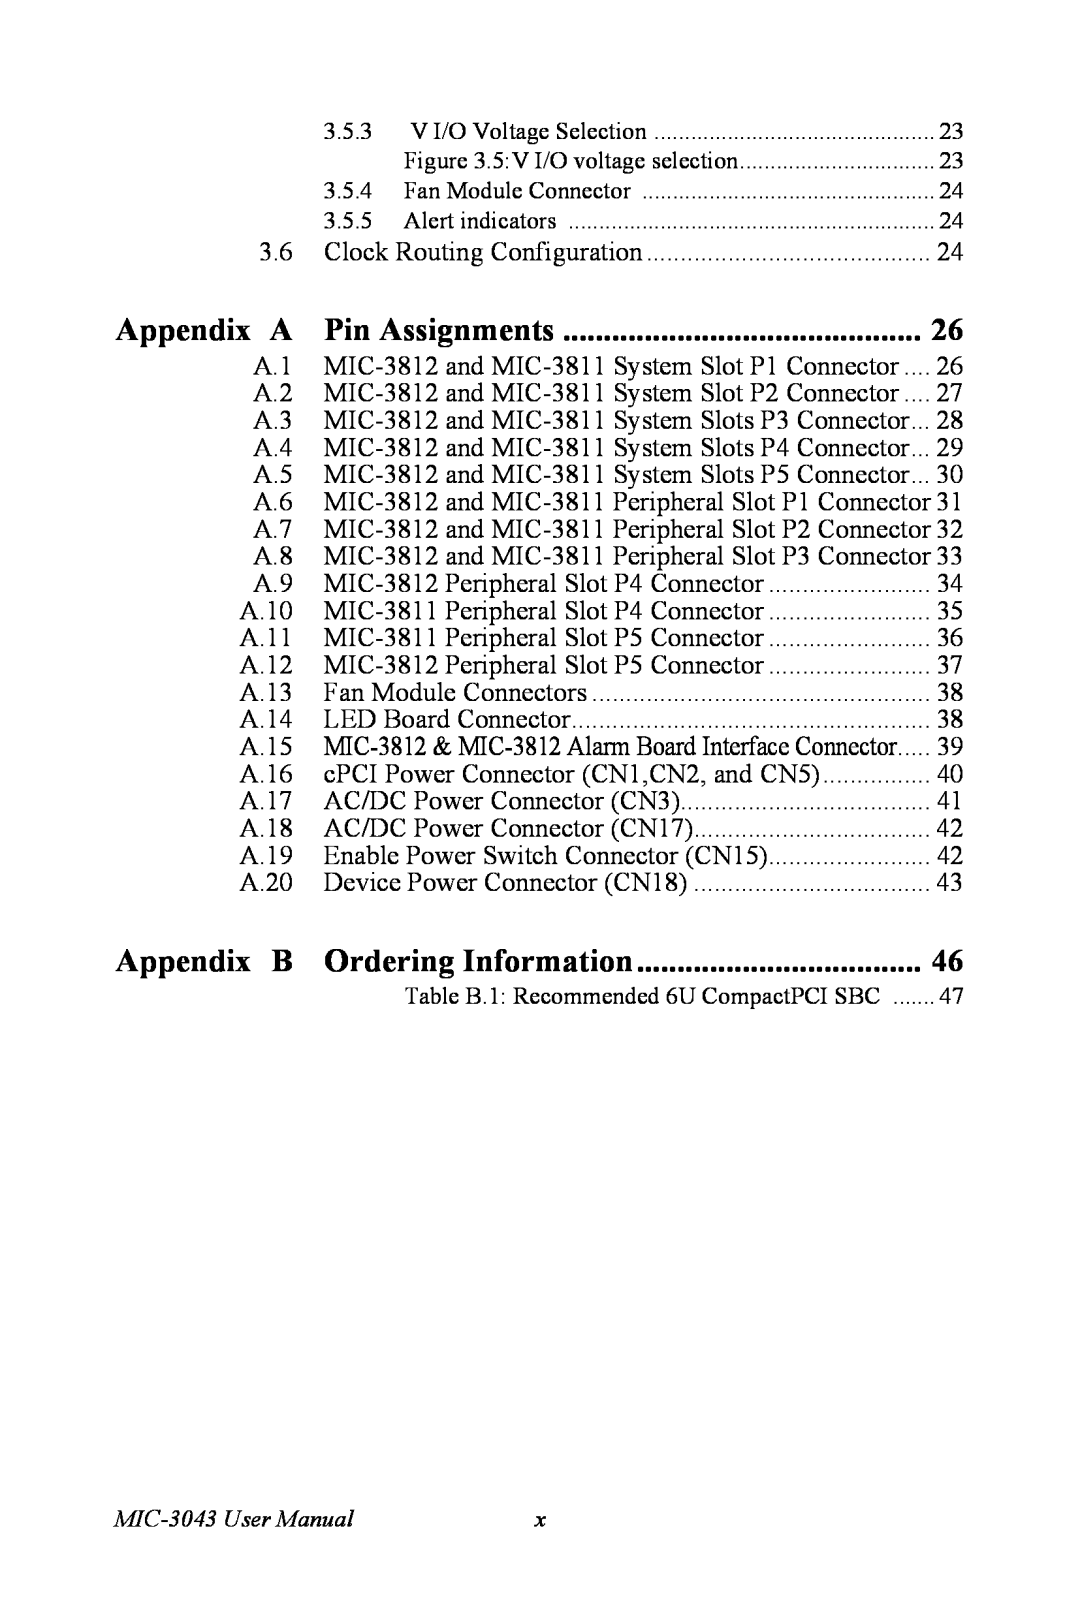 Advantech MIC-3043 user manual Appendix A, Pin Assignments, Appendix B Ordering Information 